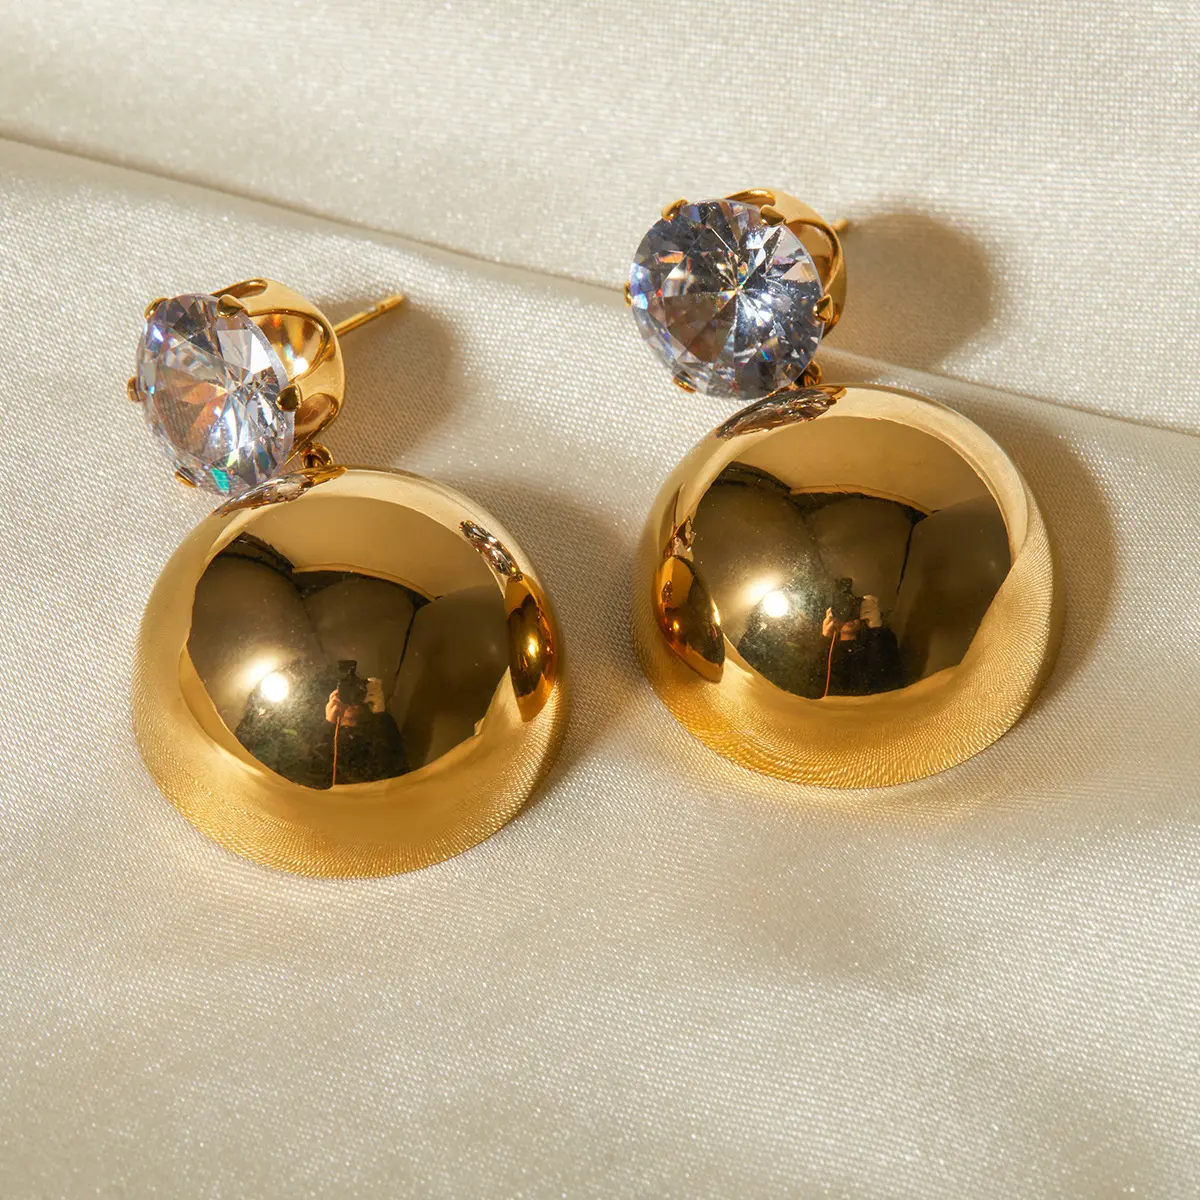 Hypoallergenic Jewelry Detachable Zircon Double Ball Bead Earring Stainless Steel Gold Two Ways To Wear Stud Drop Earrings